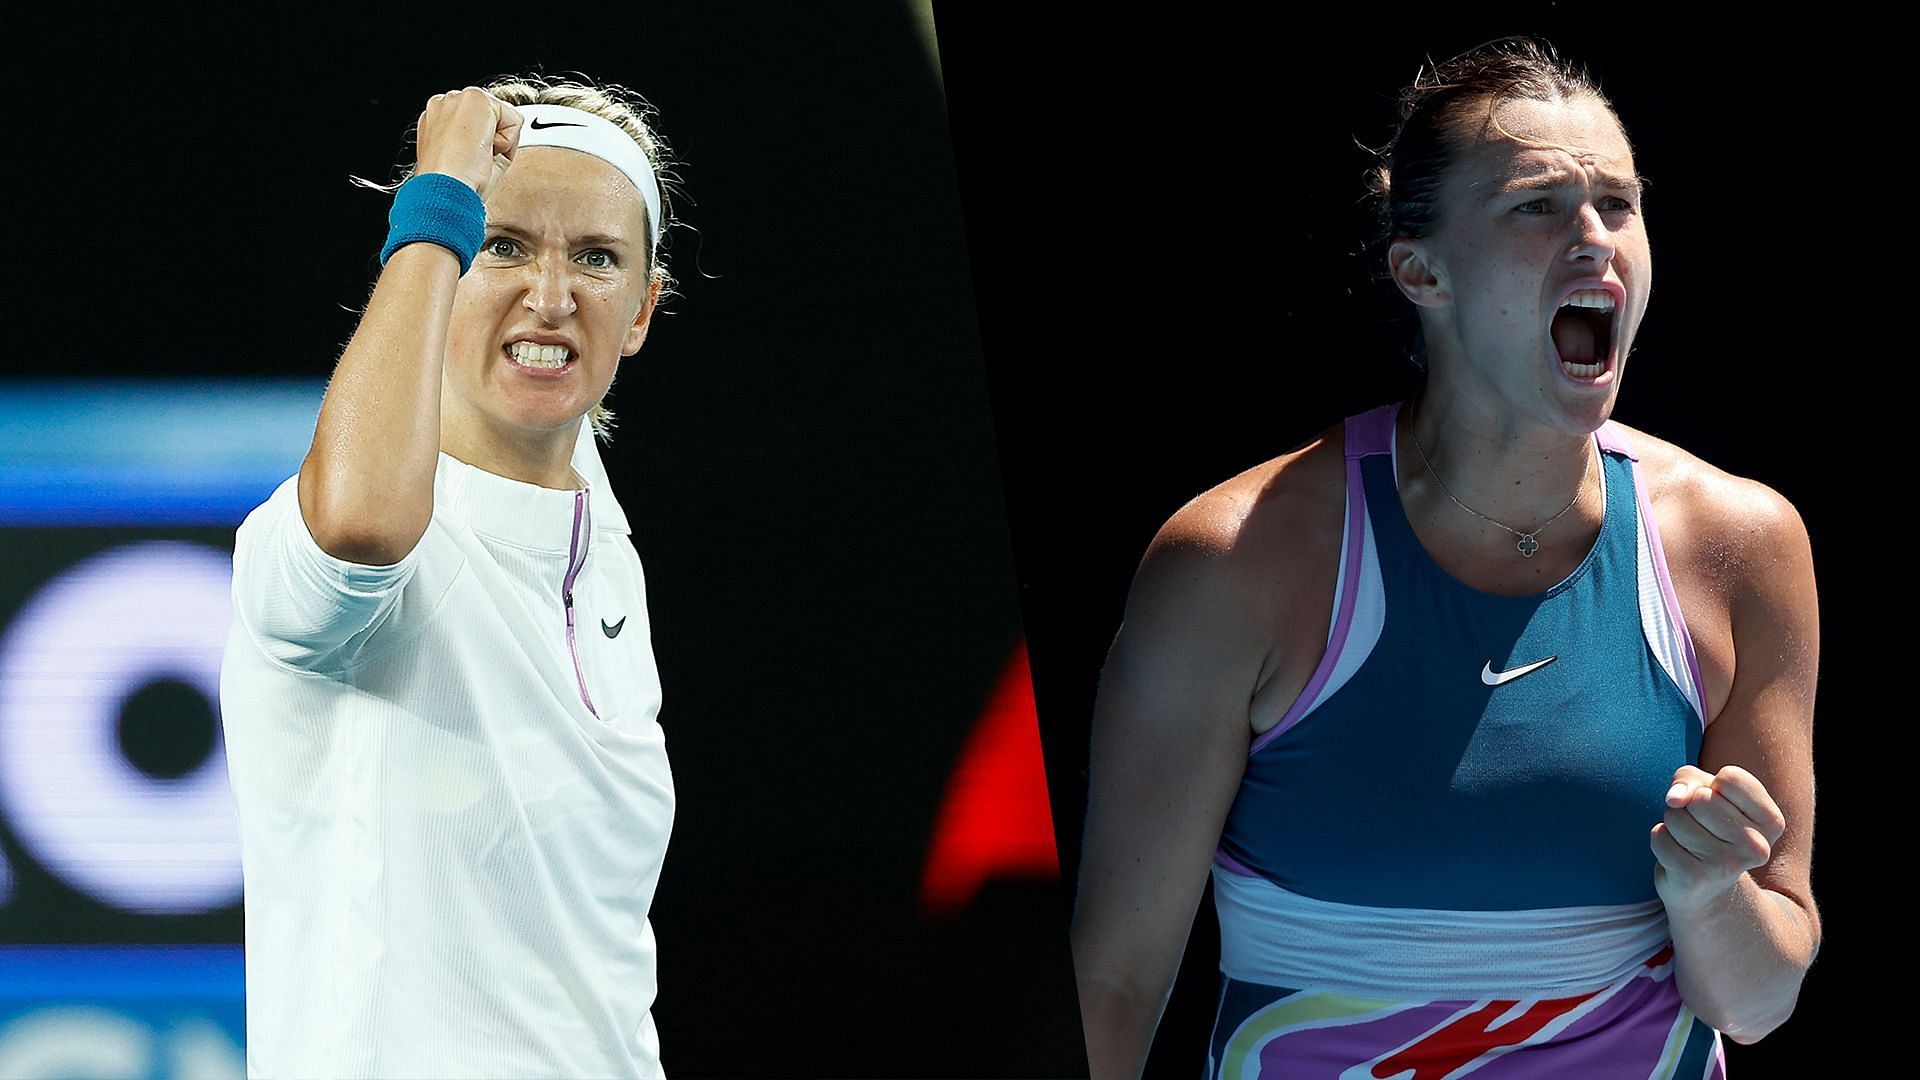 Victoria Azarenka and Aryna Sabalenka will be in action on Day 11 of the Australian Open